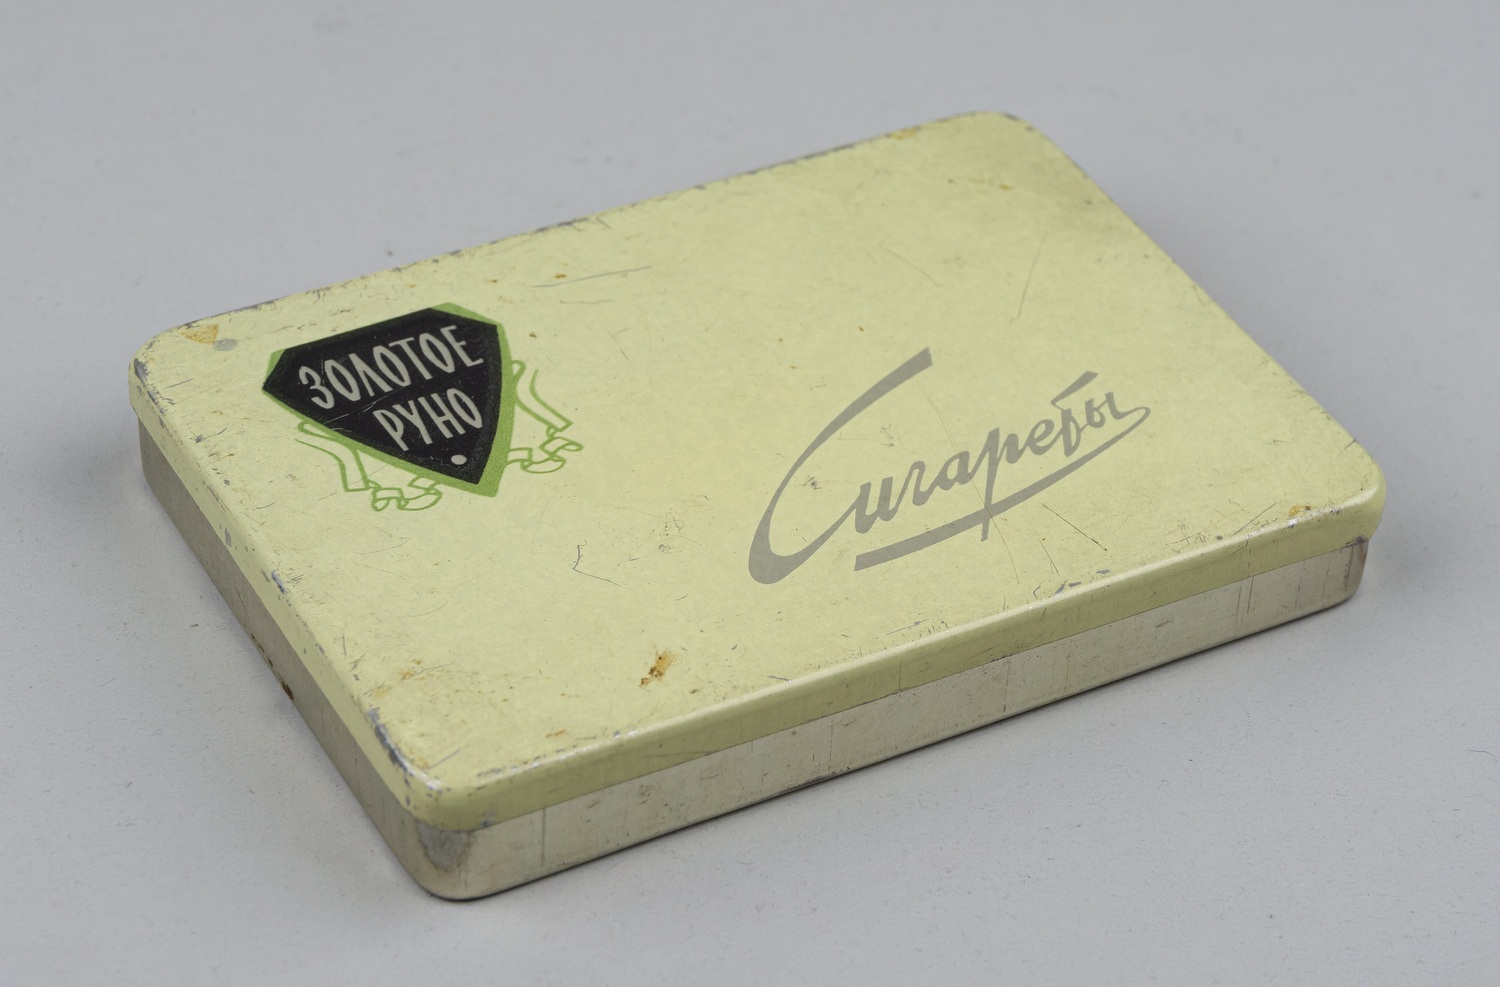 Пачка от сигарет «Золотое руно». СССР, конец 1960-х - 1970-е годы.